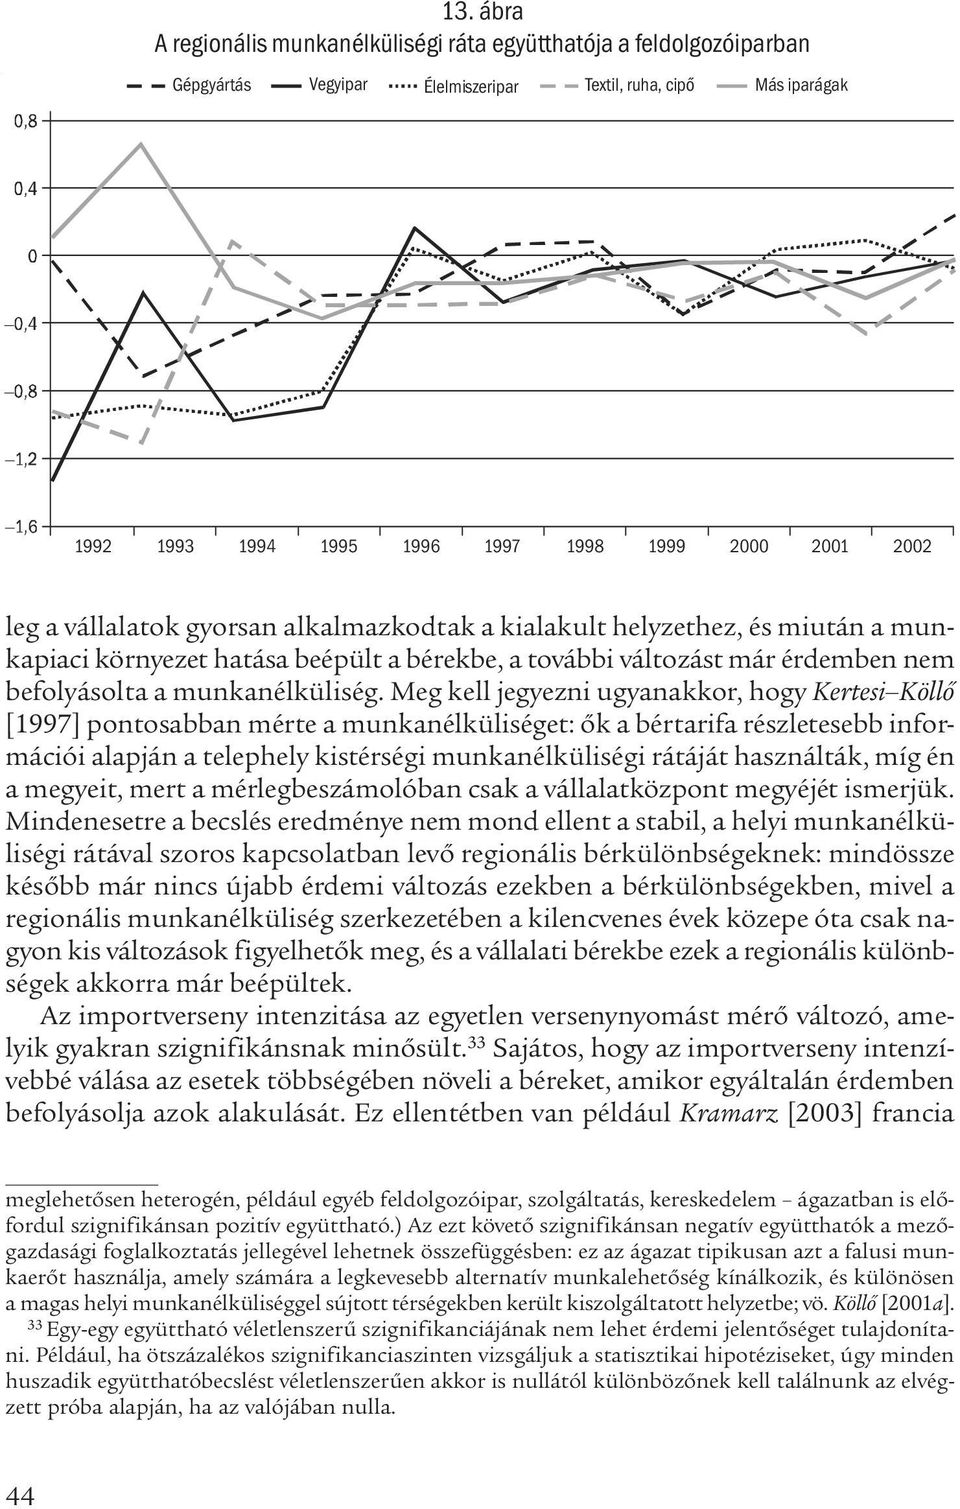 Meg kell jegyezni ugyanakkor, hogy Kertesi Köllő [1997] pontosabban mérte a munkanélküliséget: ők a bértarifa részletesebb információi alapján a telephely kistérségi munkanélküliségi rátáját